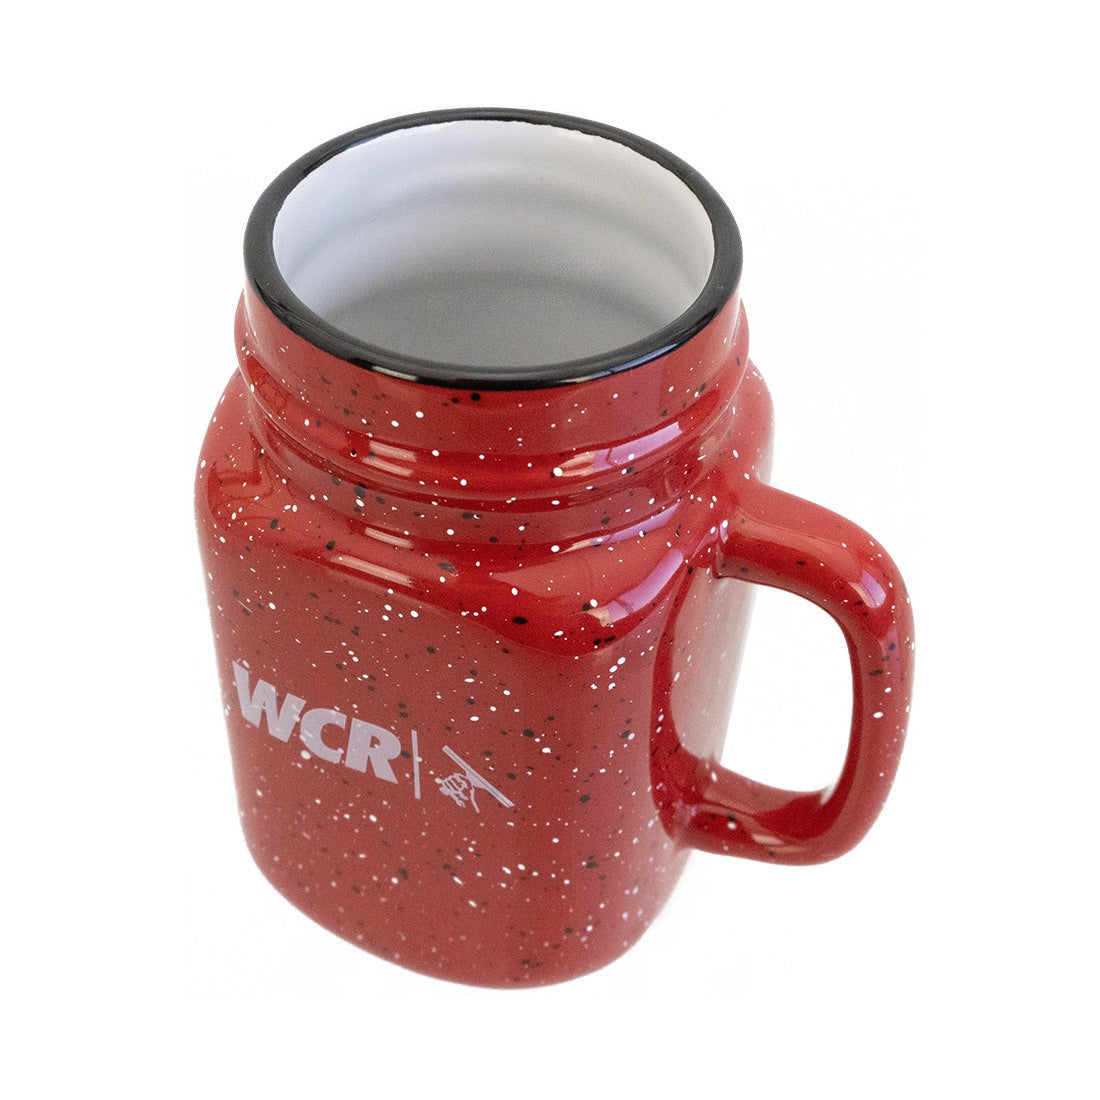 https://windowcleaner.com/cdn/shop/products/0000_wcr-ceramic-mason-jar-mug-first-_copy_3_1.jpg?v=1667977436&width=1445